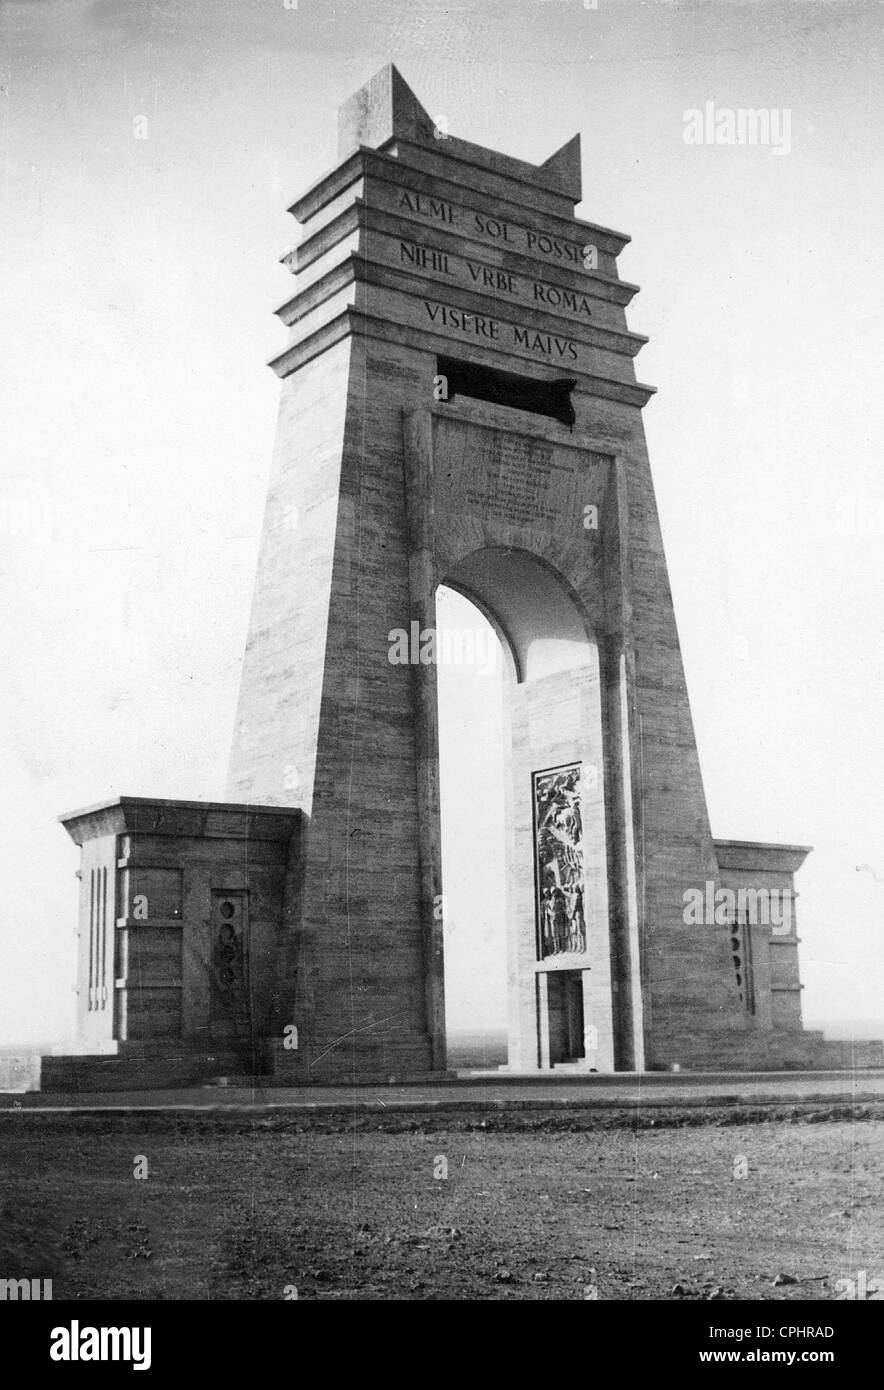 Arco de triunfo en la colonia italiana de Libia en 1937 Foto de stock